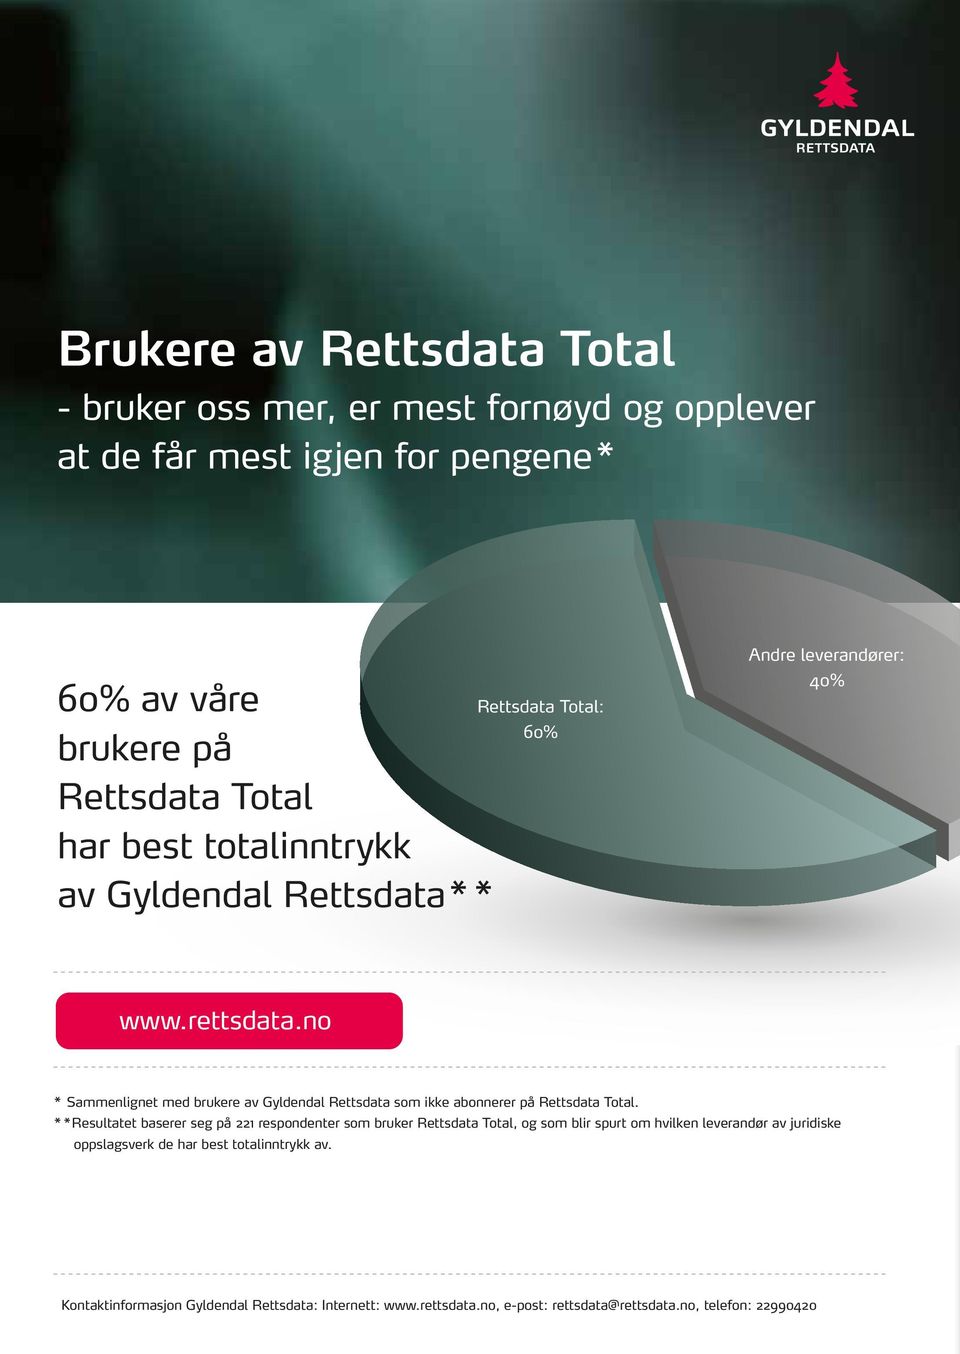 no * Sammenlignet med brukere av Gyldendal Rettsdata som ikke abonnerer på Rettsdata Total.